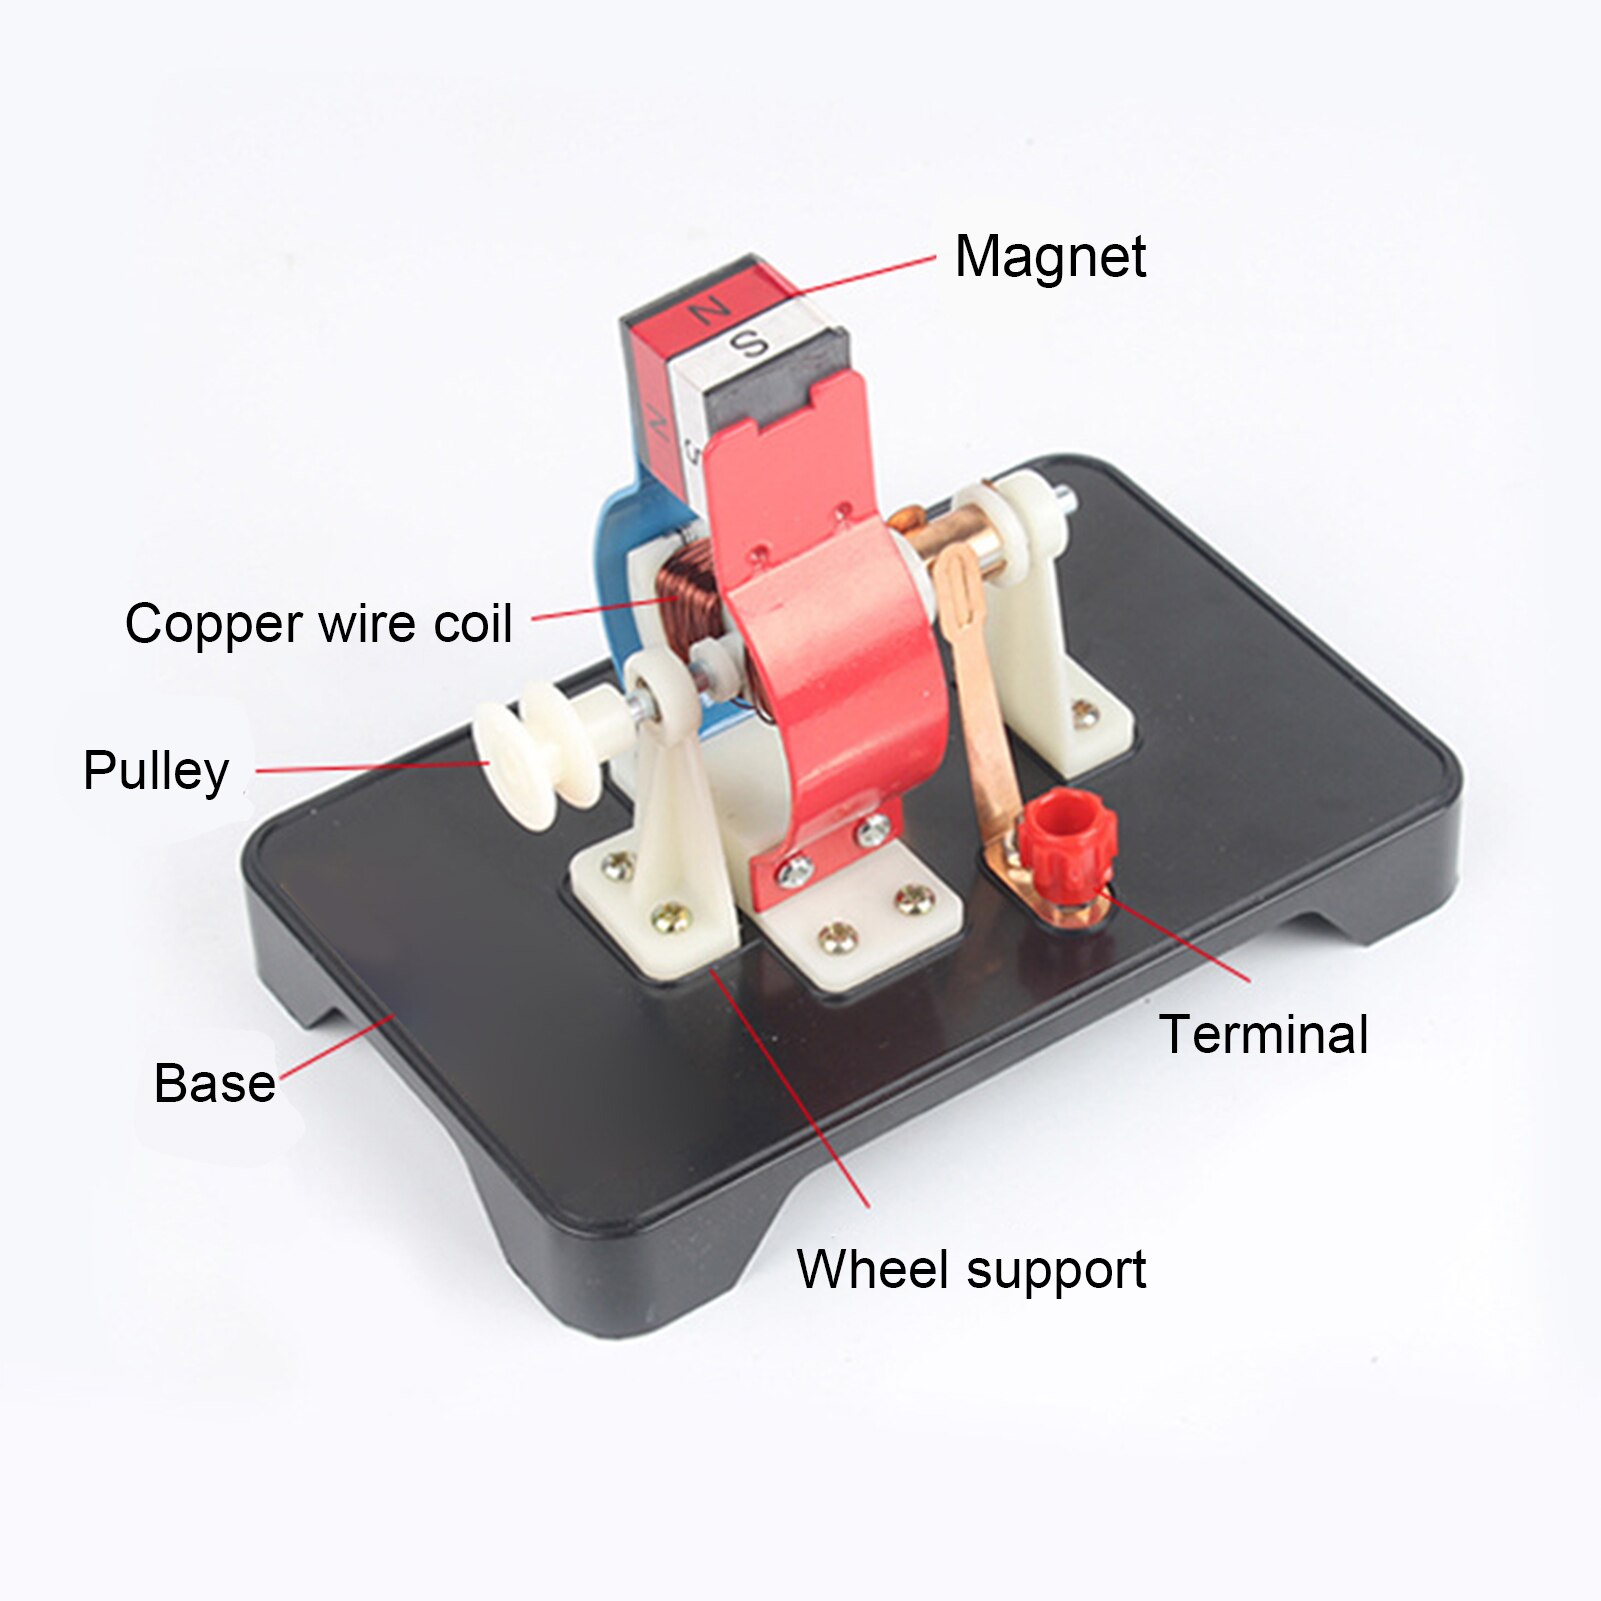 Imán permanente Motor DC pequeño modelo experimento de física instrumento con desmontaje herramienta de cables física Motor eléctrico de trabajo